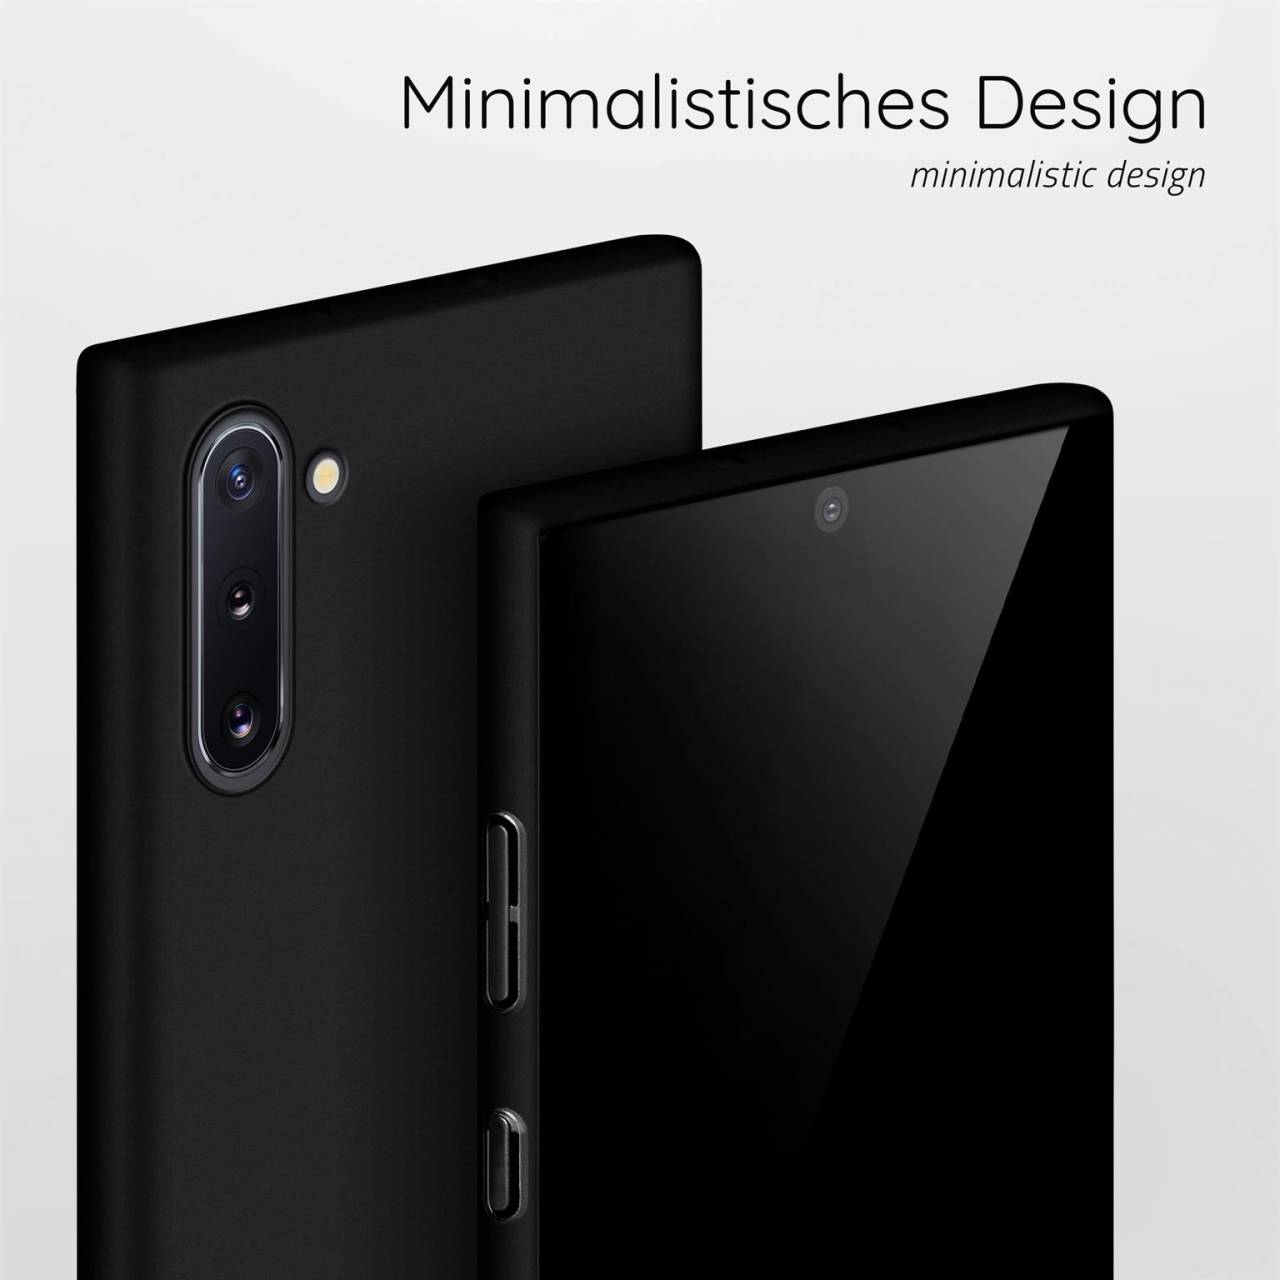 moex Alpha Case für Samsung Galaxy Note 10 – Extrem dünne, minimalistische Hülle in seidenmatt